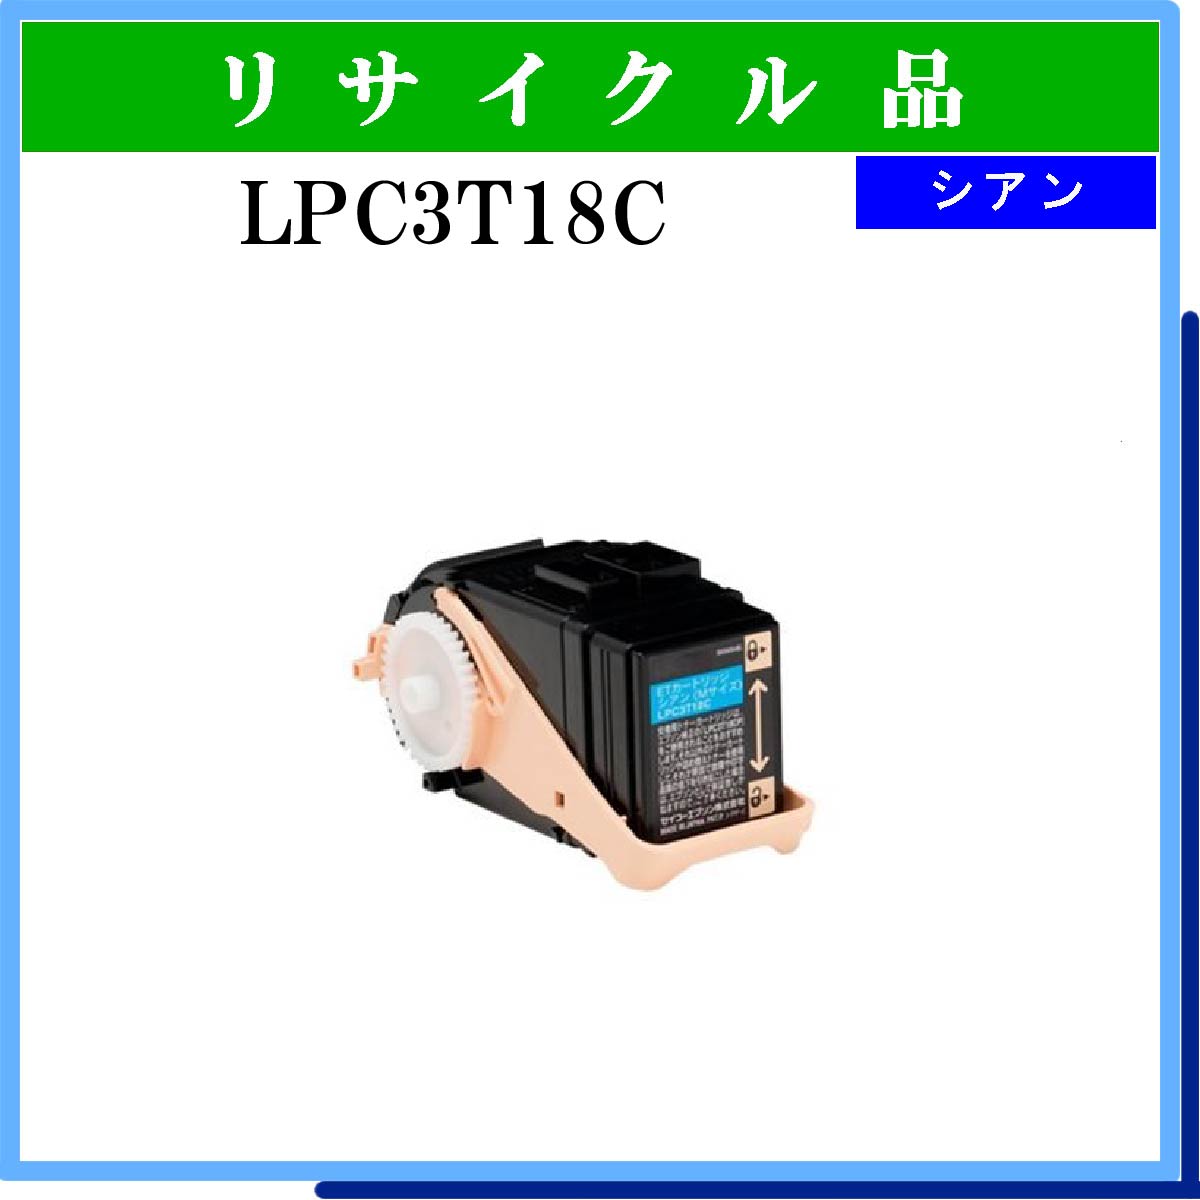 LPC3T18C